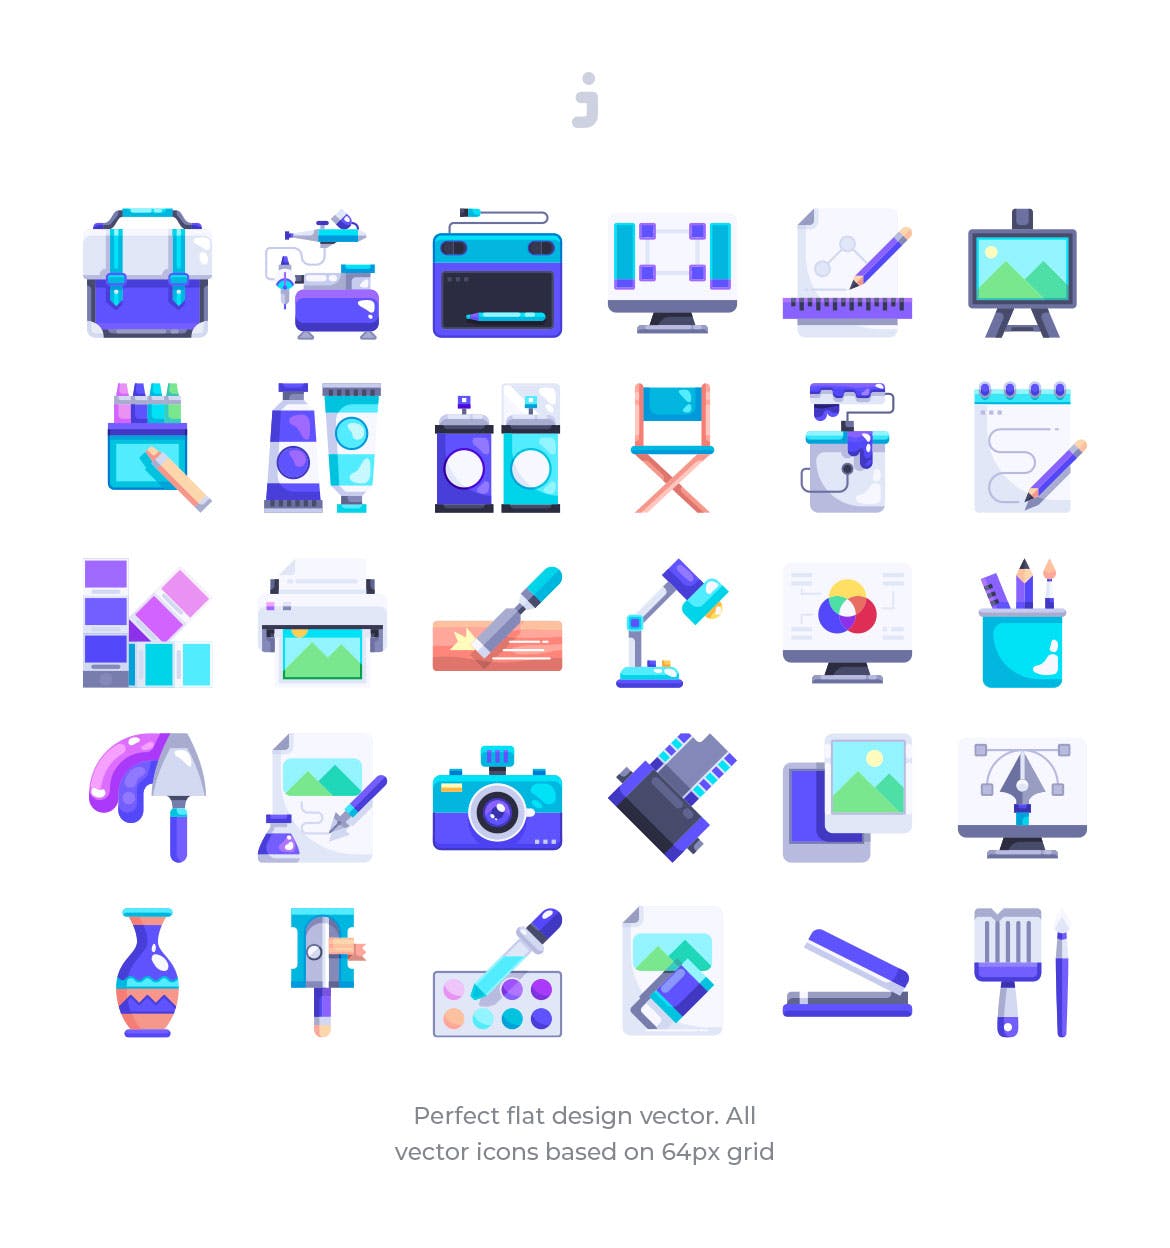 30枚艺术工作室扁平化设计图标 30 Artist studio Icons – Flat插图(1)